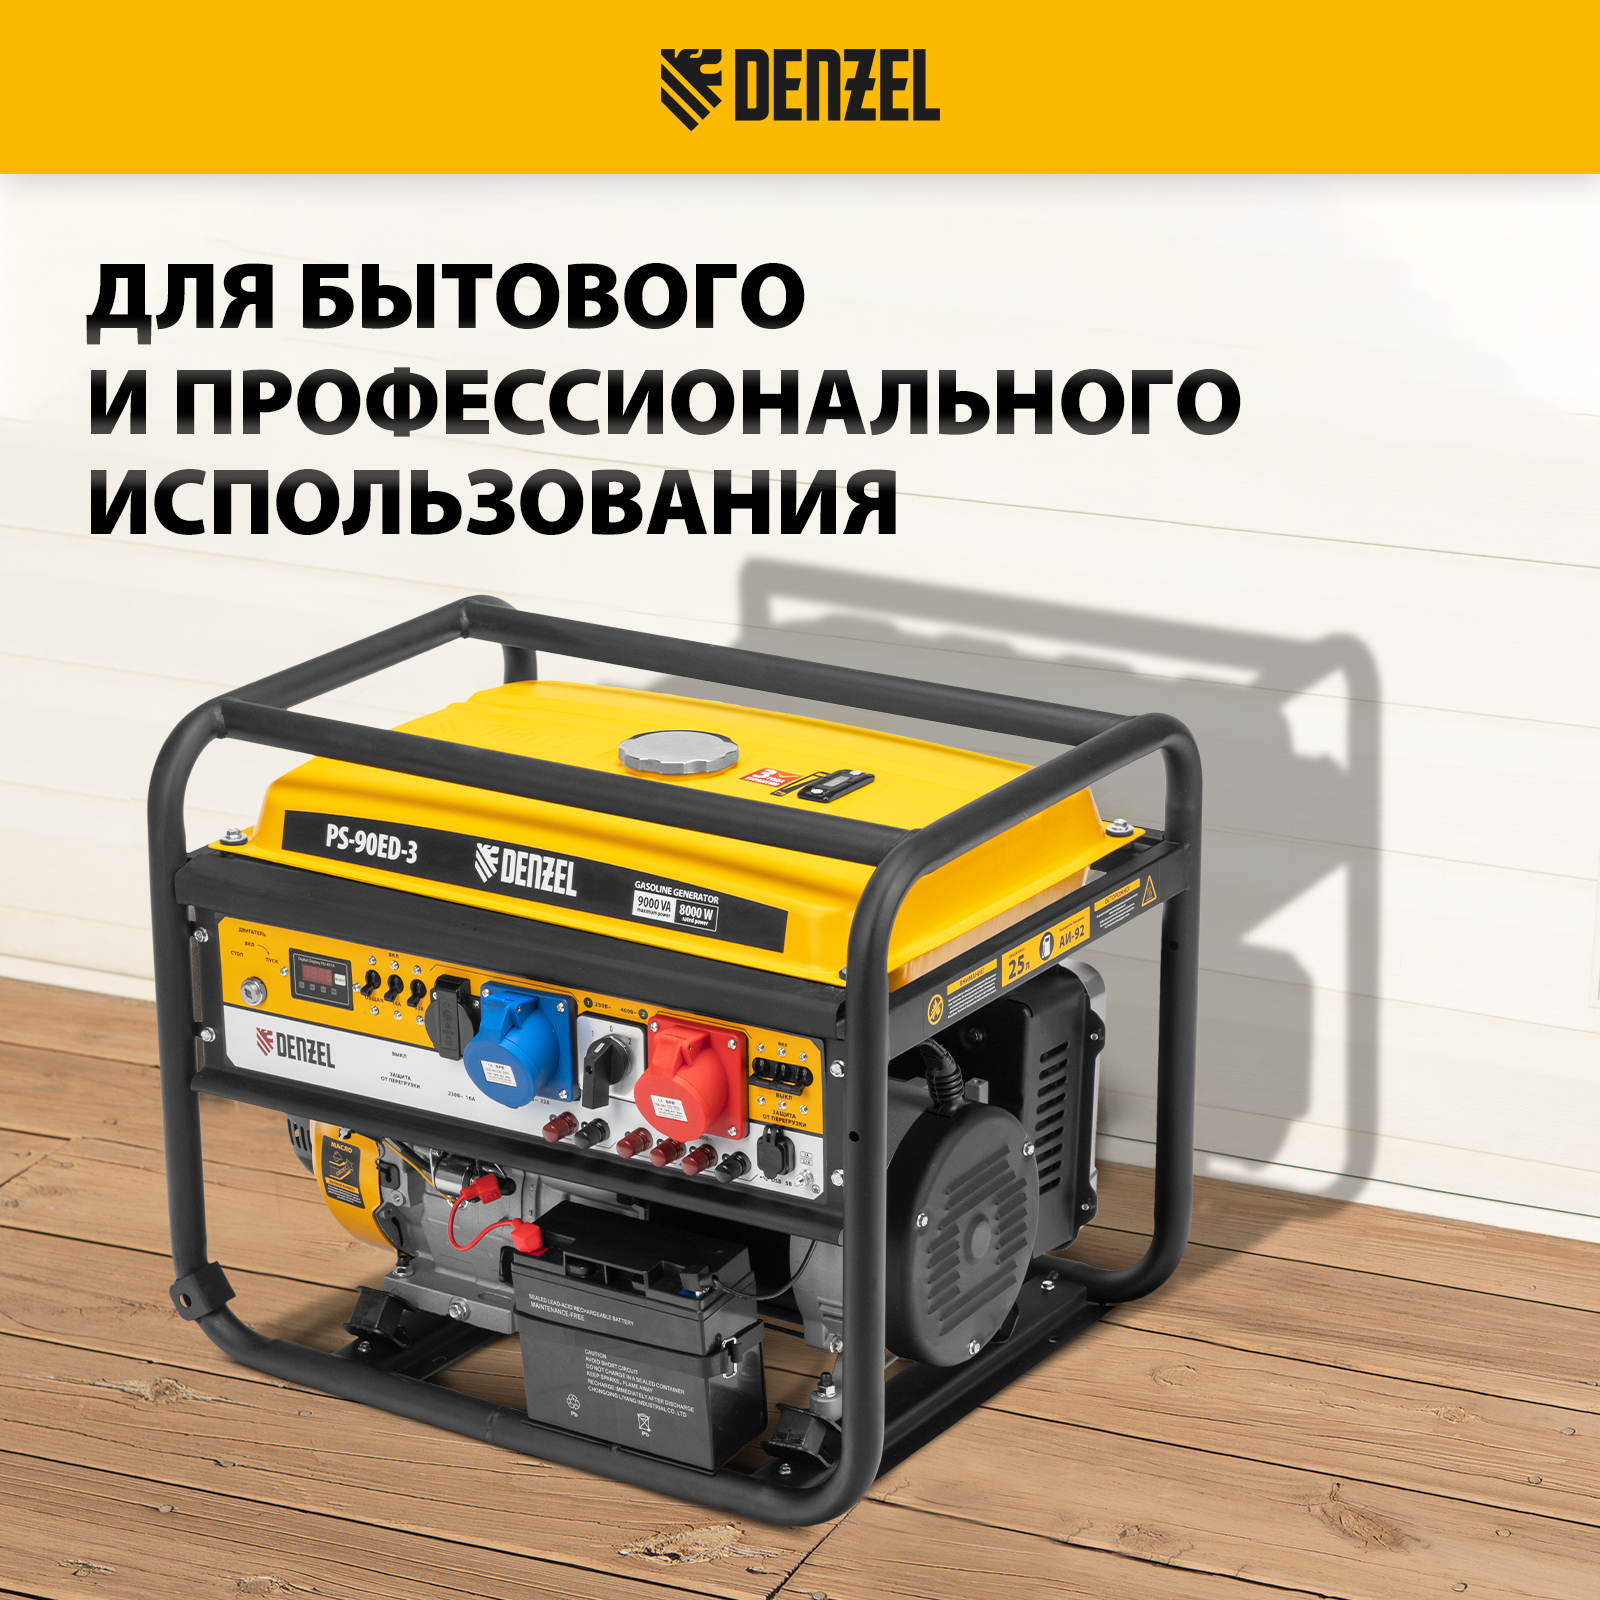 Генератор бензиновый DENZEL PS 90 ED-3 946944 9.0кВт 230 В/400 В 25л .